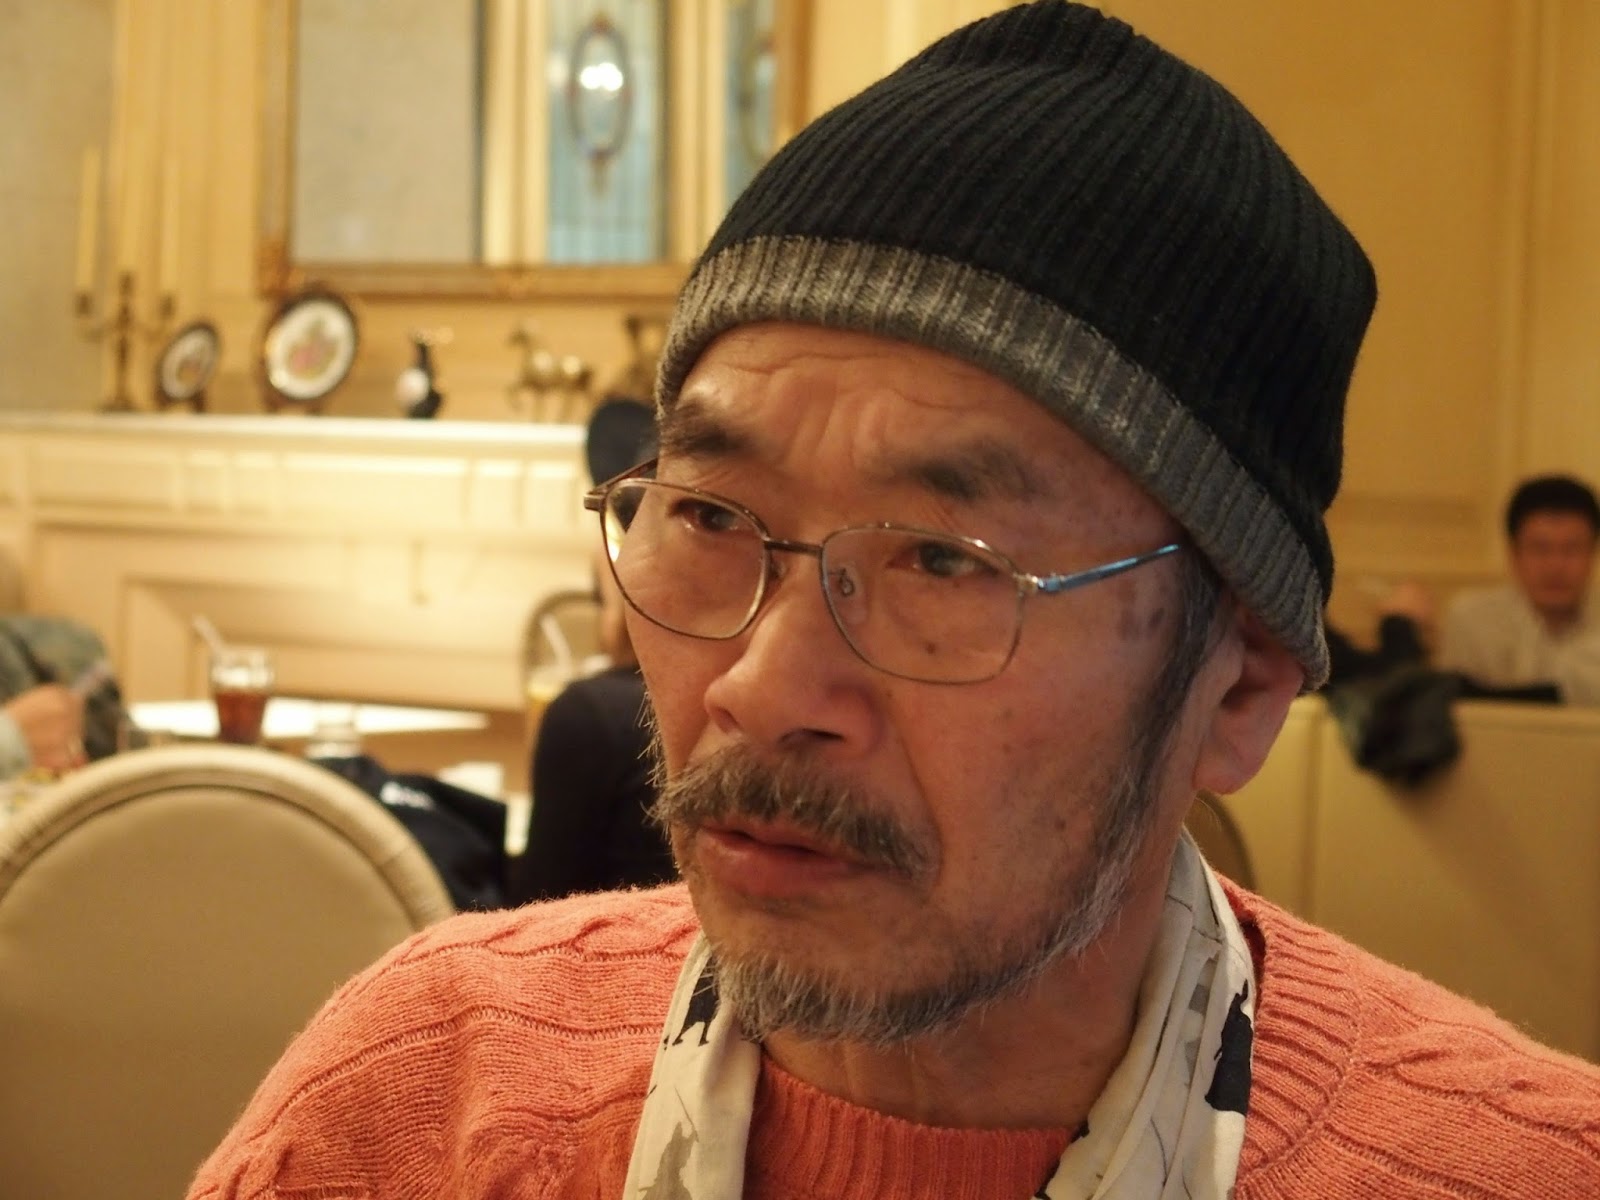 Kenpachiro Satsuma